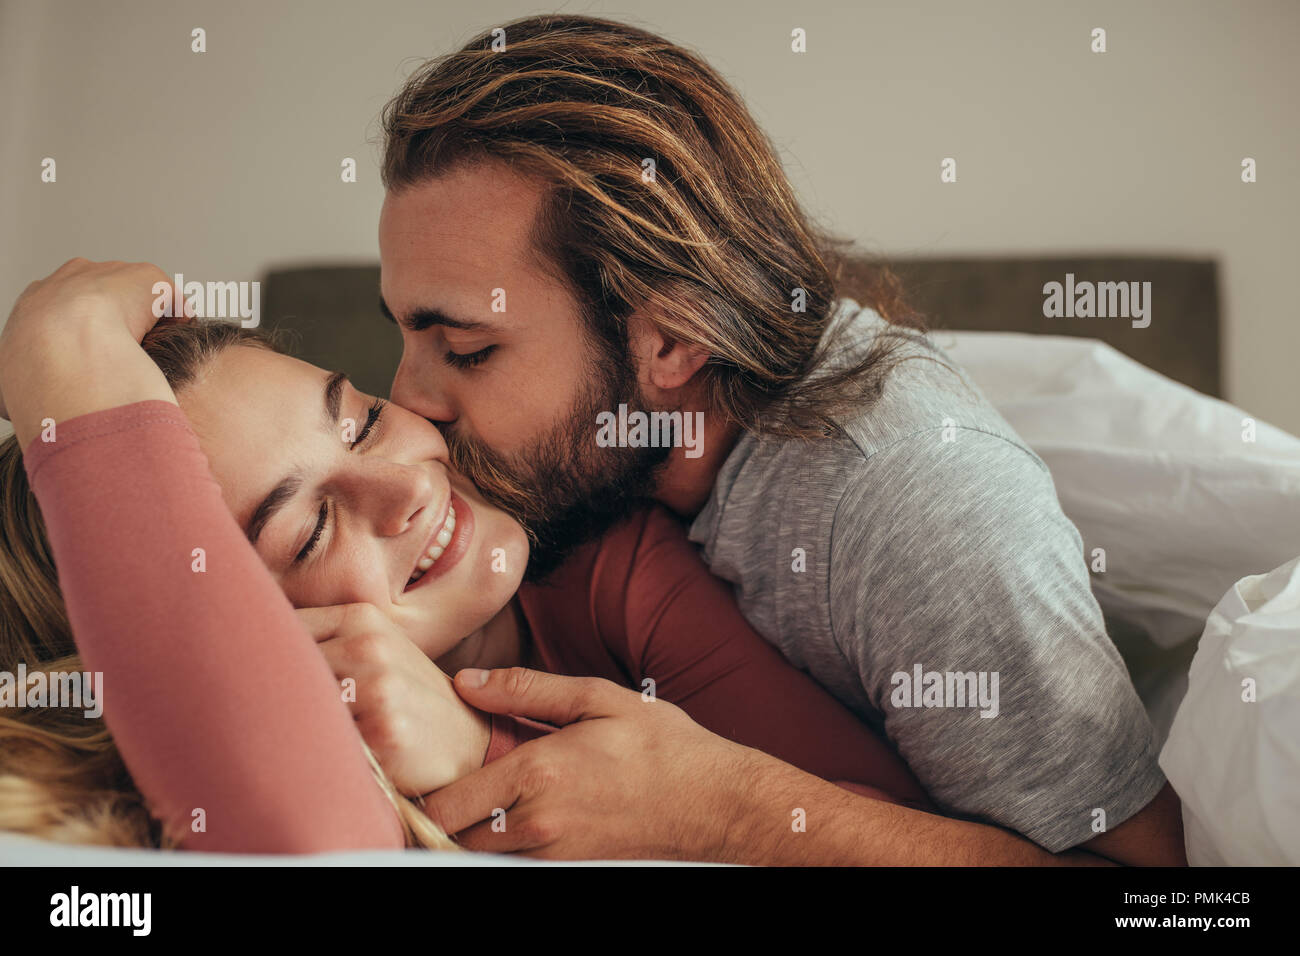 Mann küsste seine Frau schlafend auf dem Bett. Paar im Bett in Decke mit Mann und seinem Partner abgedeckt. Stockfoto